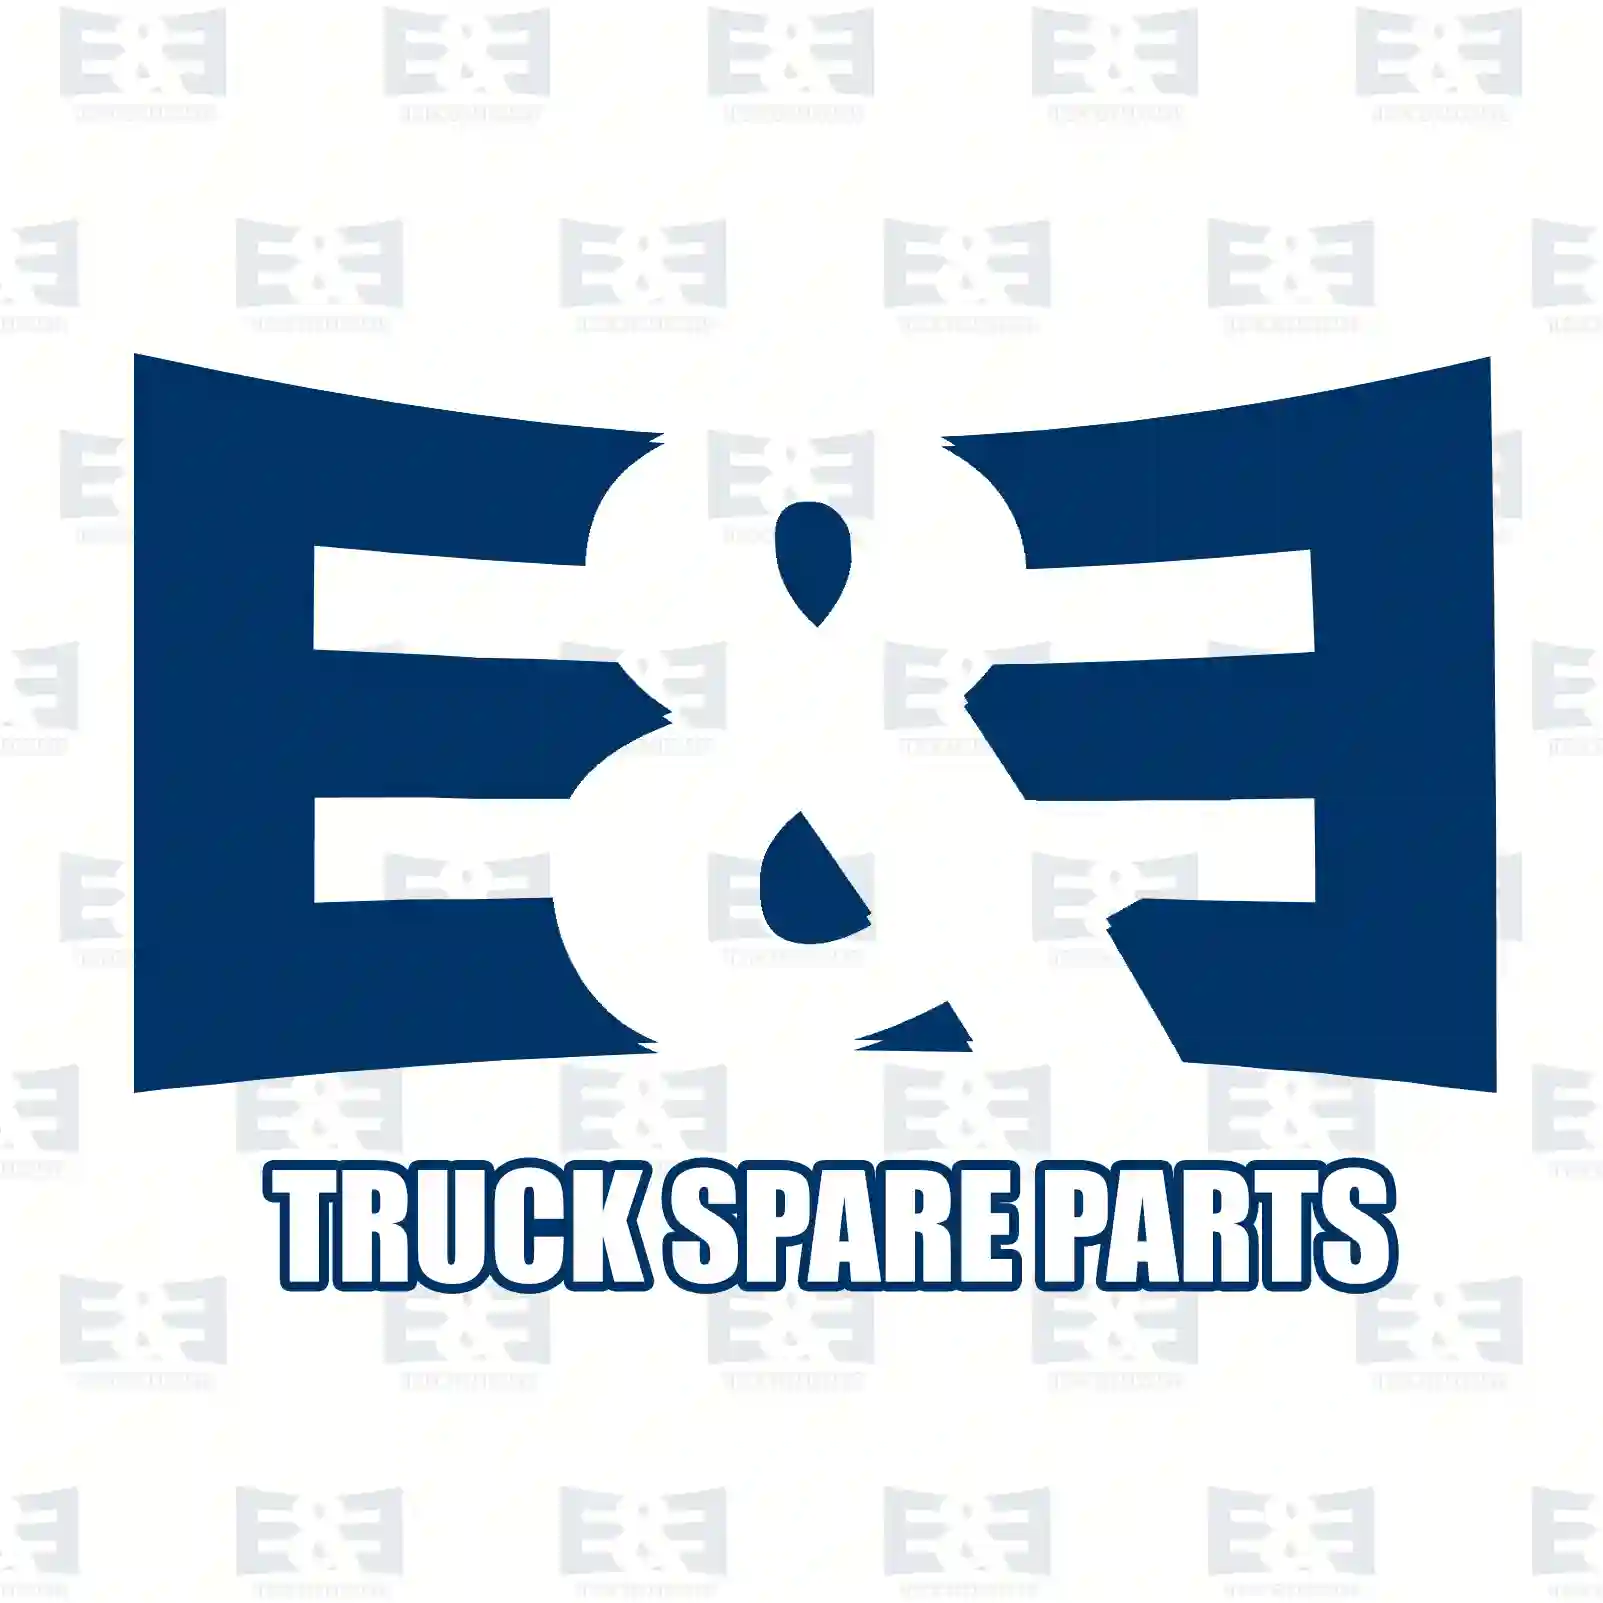 Brake disc, 2E2296438, 4174210012, 4374210012, , , , , , , , ||  2E2296438 E&E Truck Spare Parts | Truck Spare Parts, Auotomotive Spare Parts Brake disc, 2E2296438, 4174210012, 4374210012, , , , , , , , ||  2E2296438 E&E Truck Spare Parts | Truck Spare Parts, Auotomotive Spare Parts